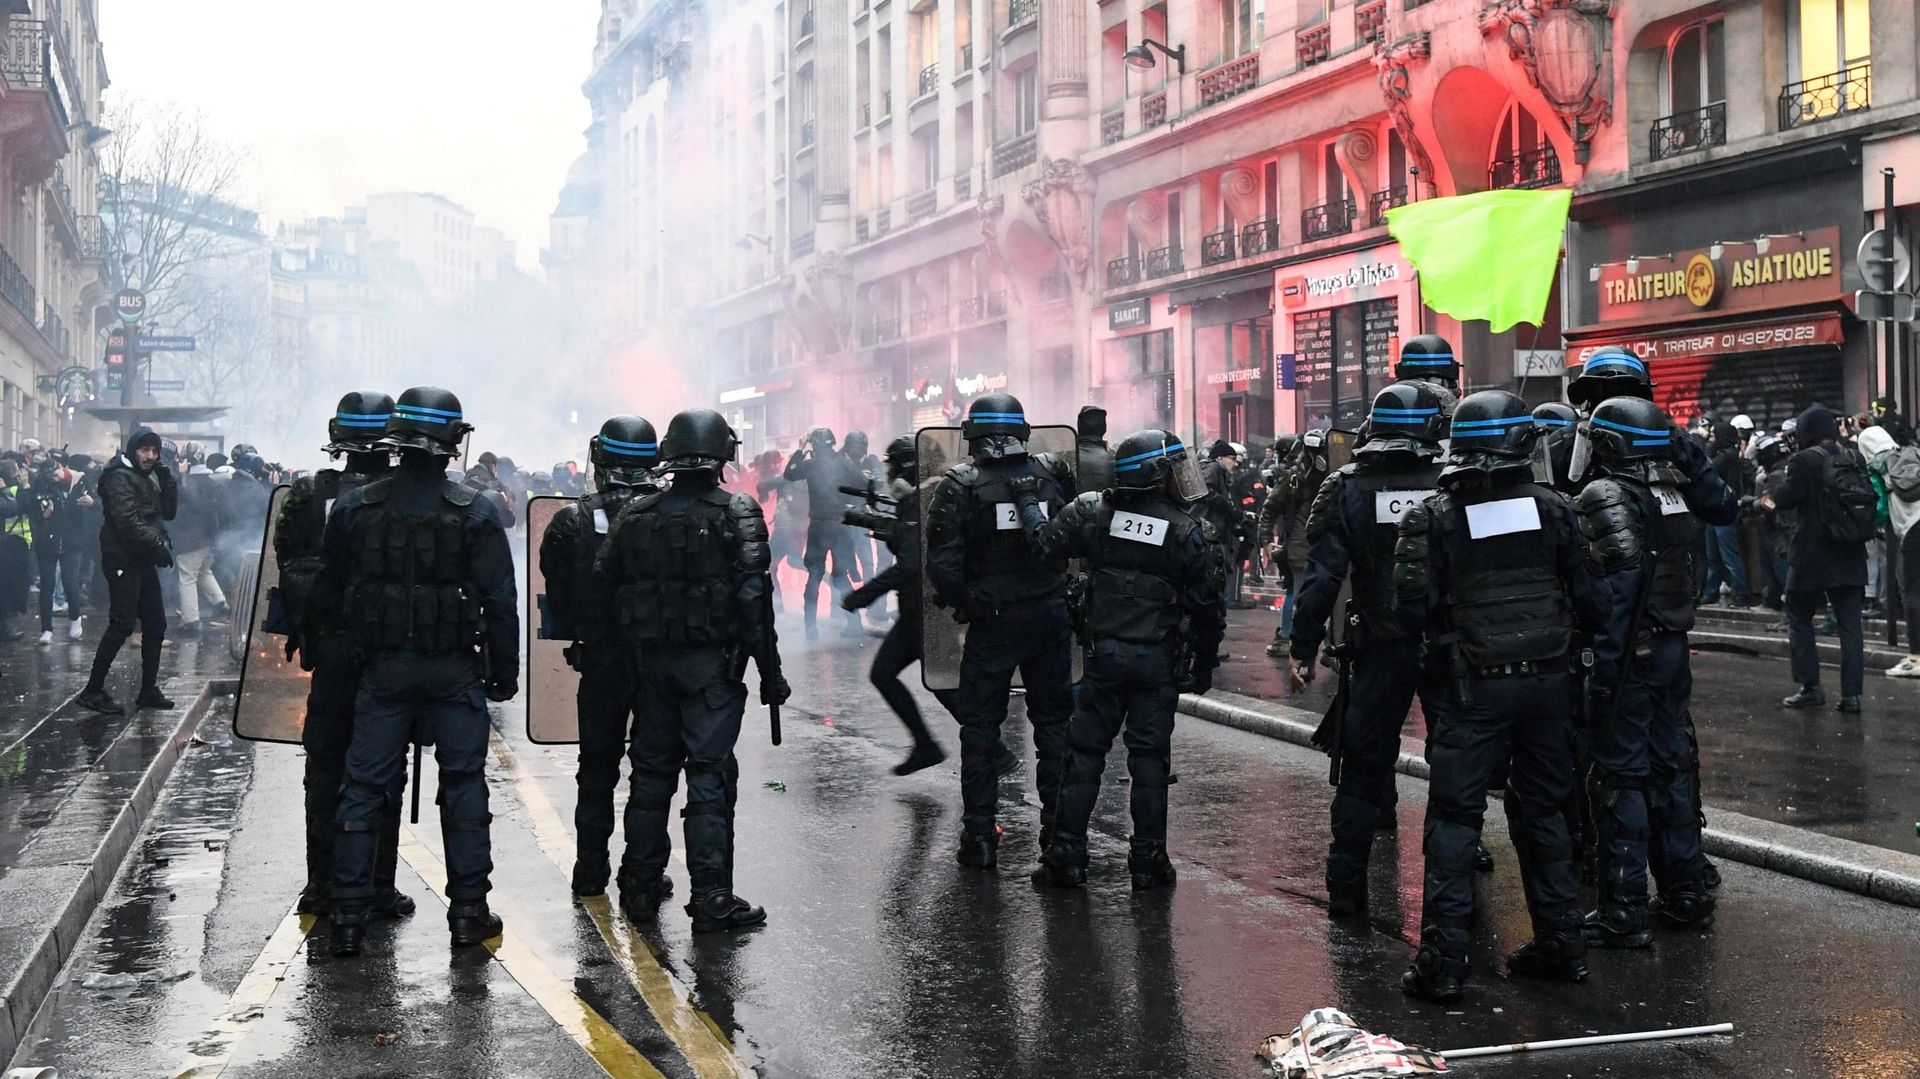 La police fait face à des manifestants lors d’une manifestation à Paris, le 9 janvier 2020, au 36e jour d’une grève nationale multisectorielle contre la refonte des retraites du gouvernement français.
